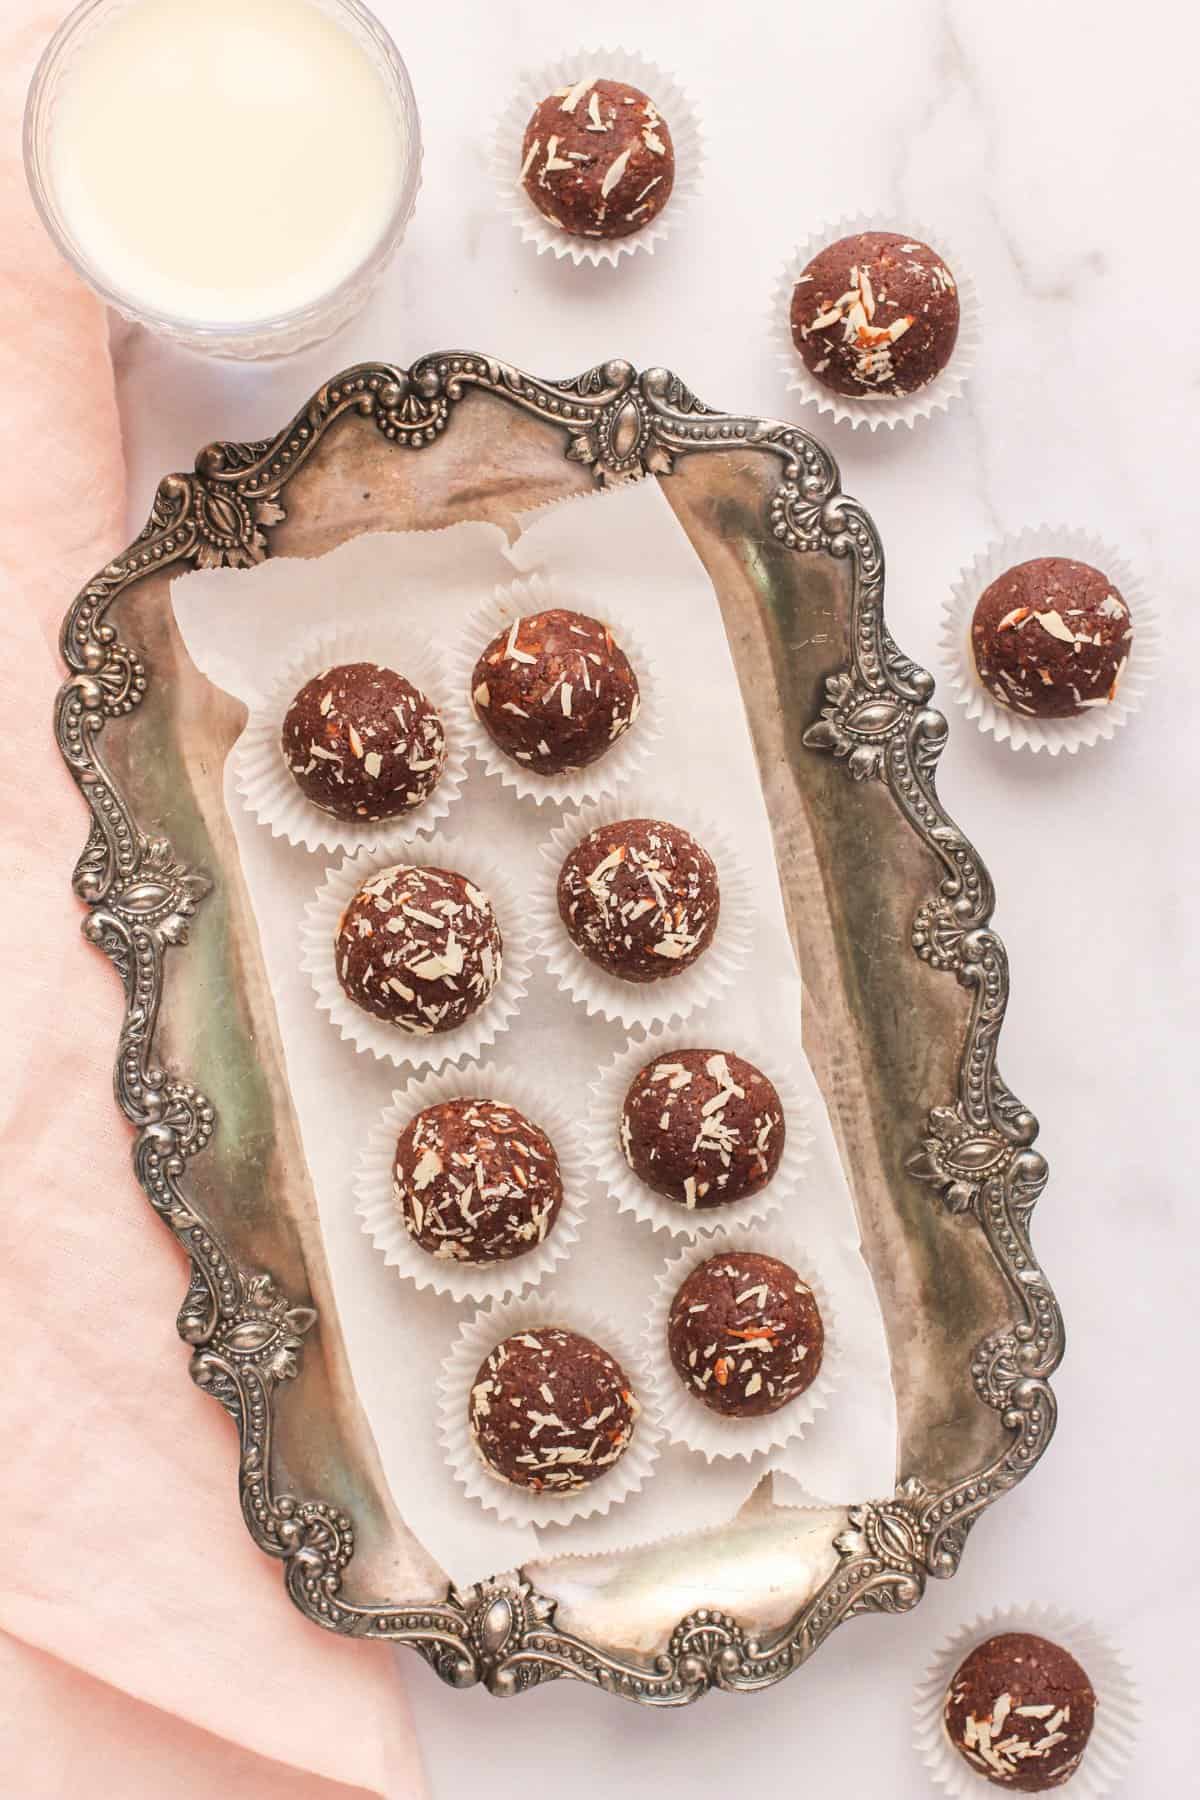 quinoa truffles in a silver tray 